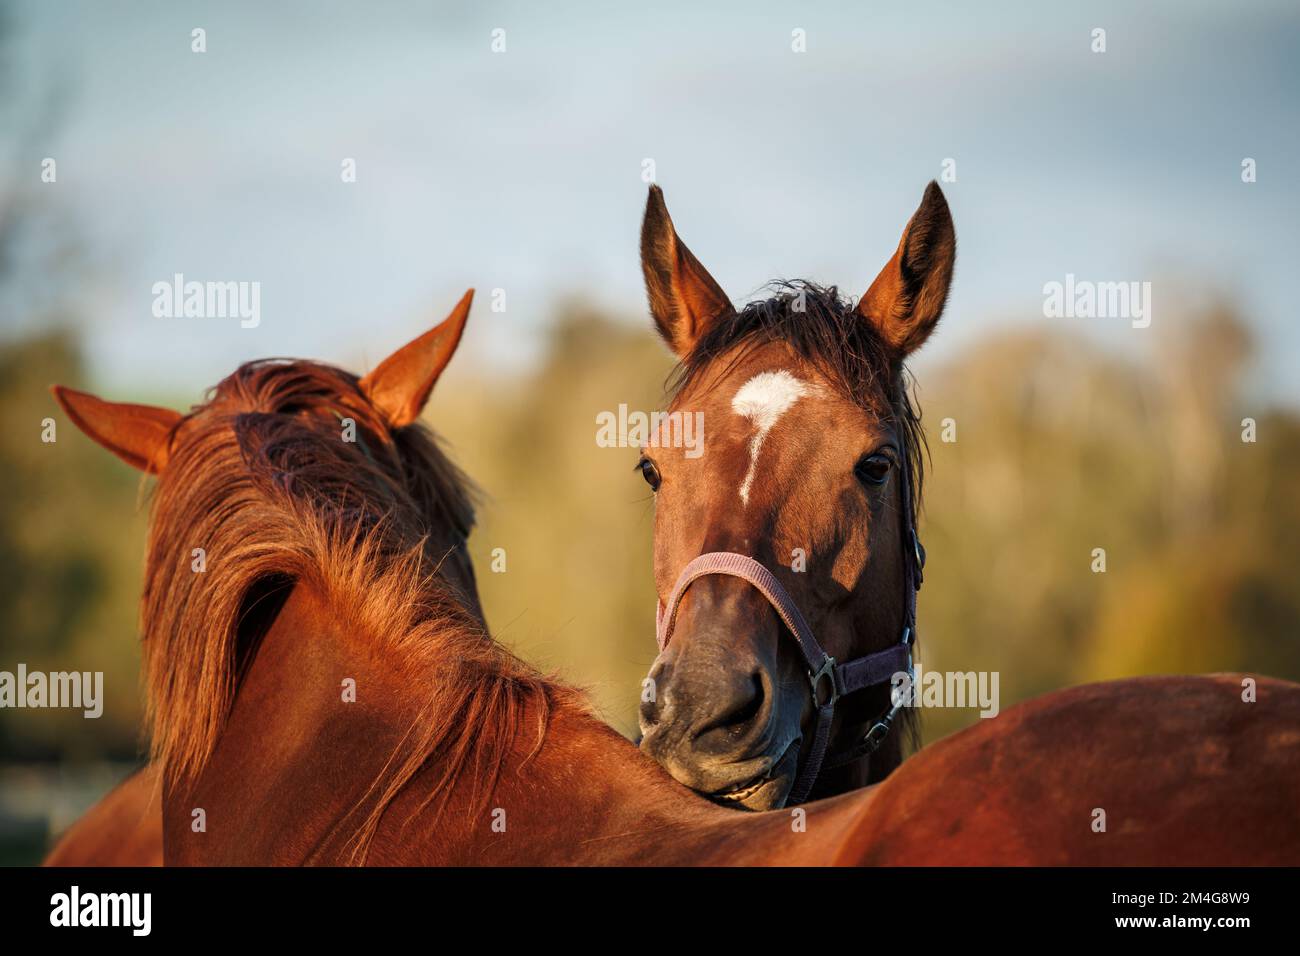 Zwei Pferde beißen, kratzen und pflegen sich gegenseitig auf der Weide. Tierverhalten Stockfoto